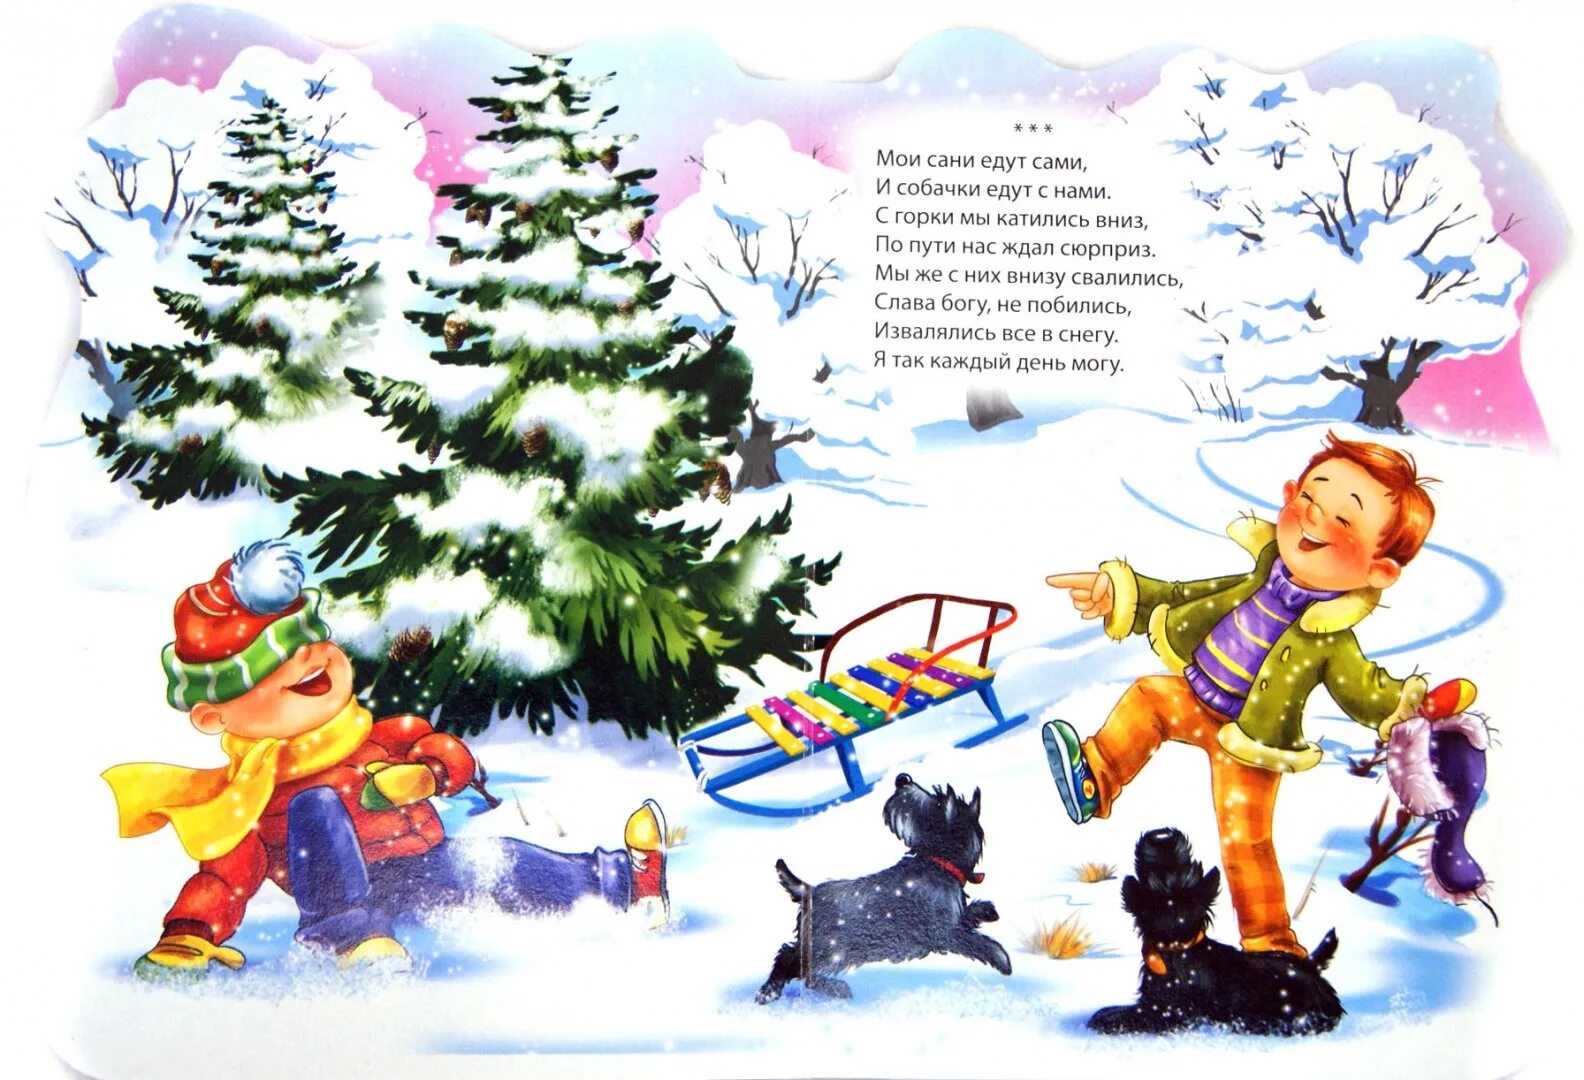 Ехать под горку. Зимние стихи для детей. Детские стихи про зиму. Стихи про зимние забавы для дошкольников. Зимнее стихотворение для детей.